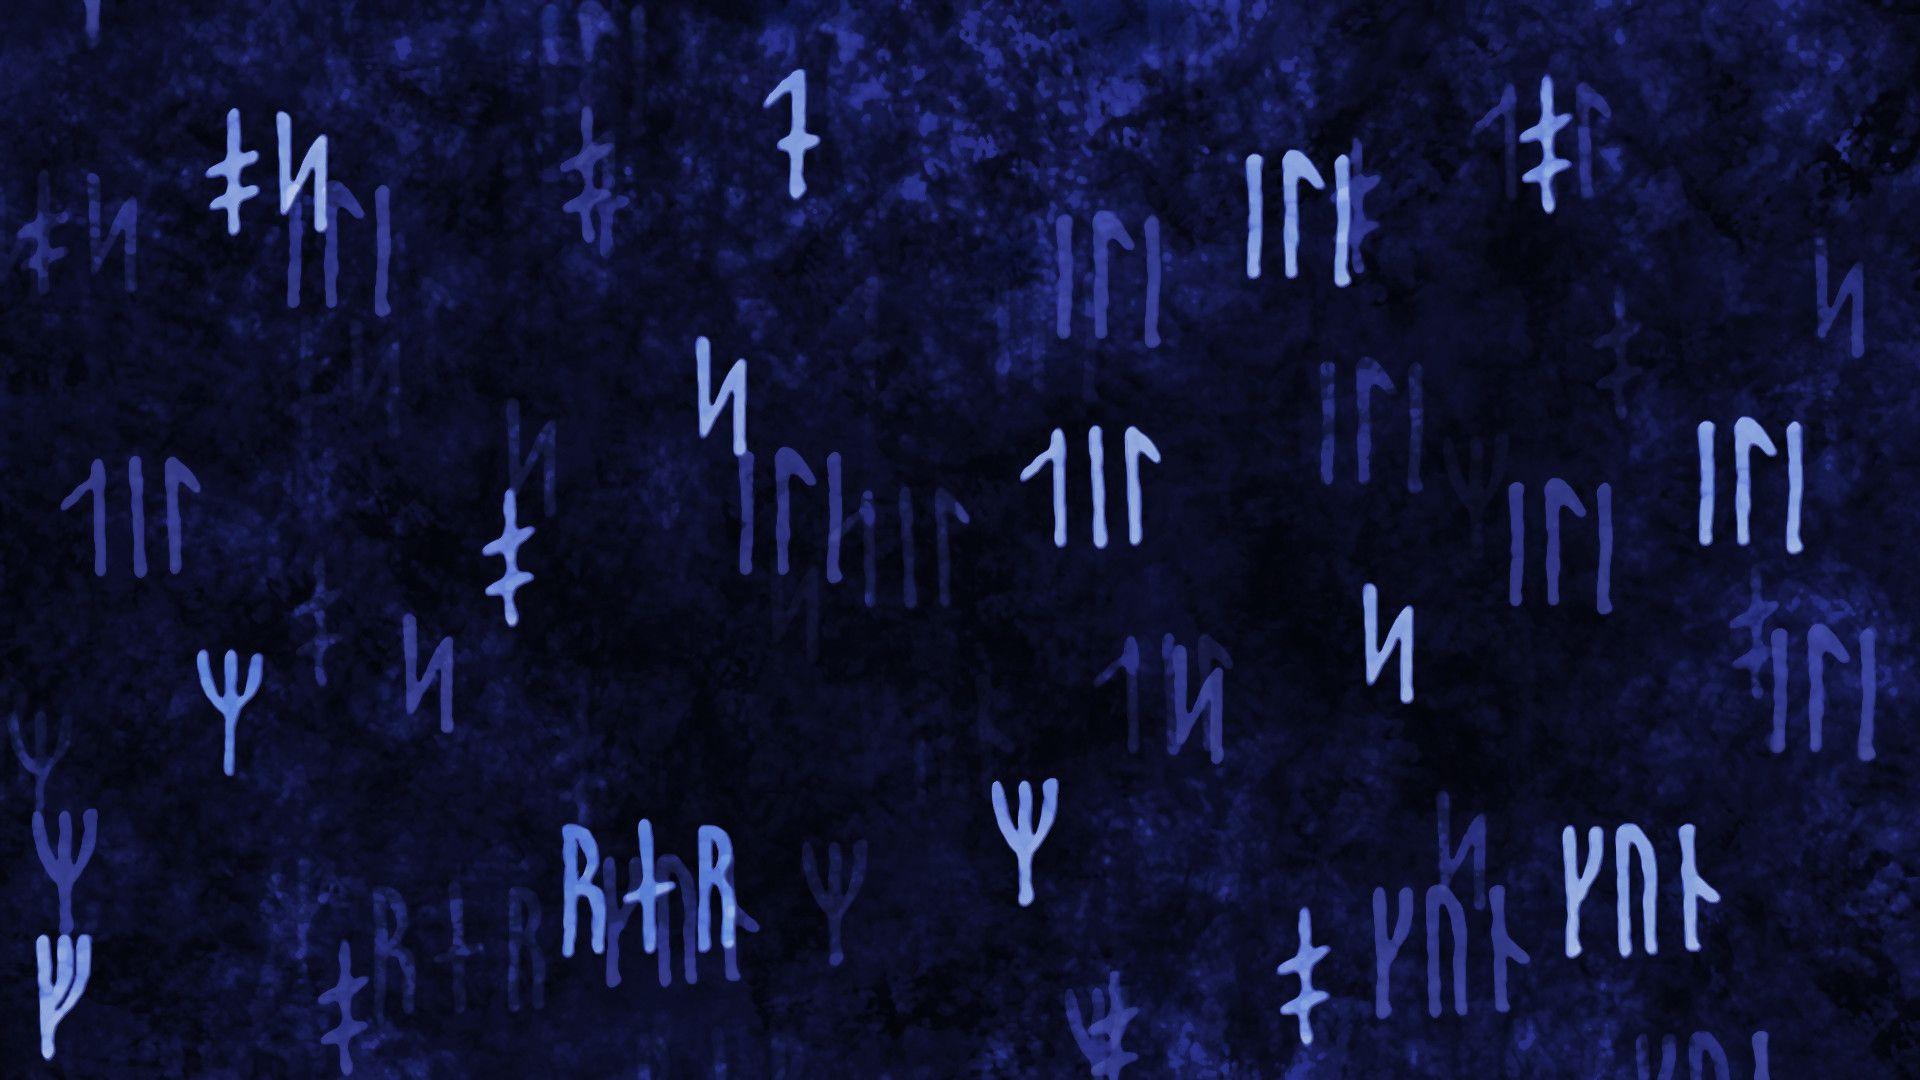 64+ Viking Rune Wallpapers.